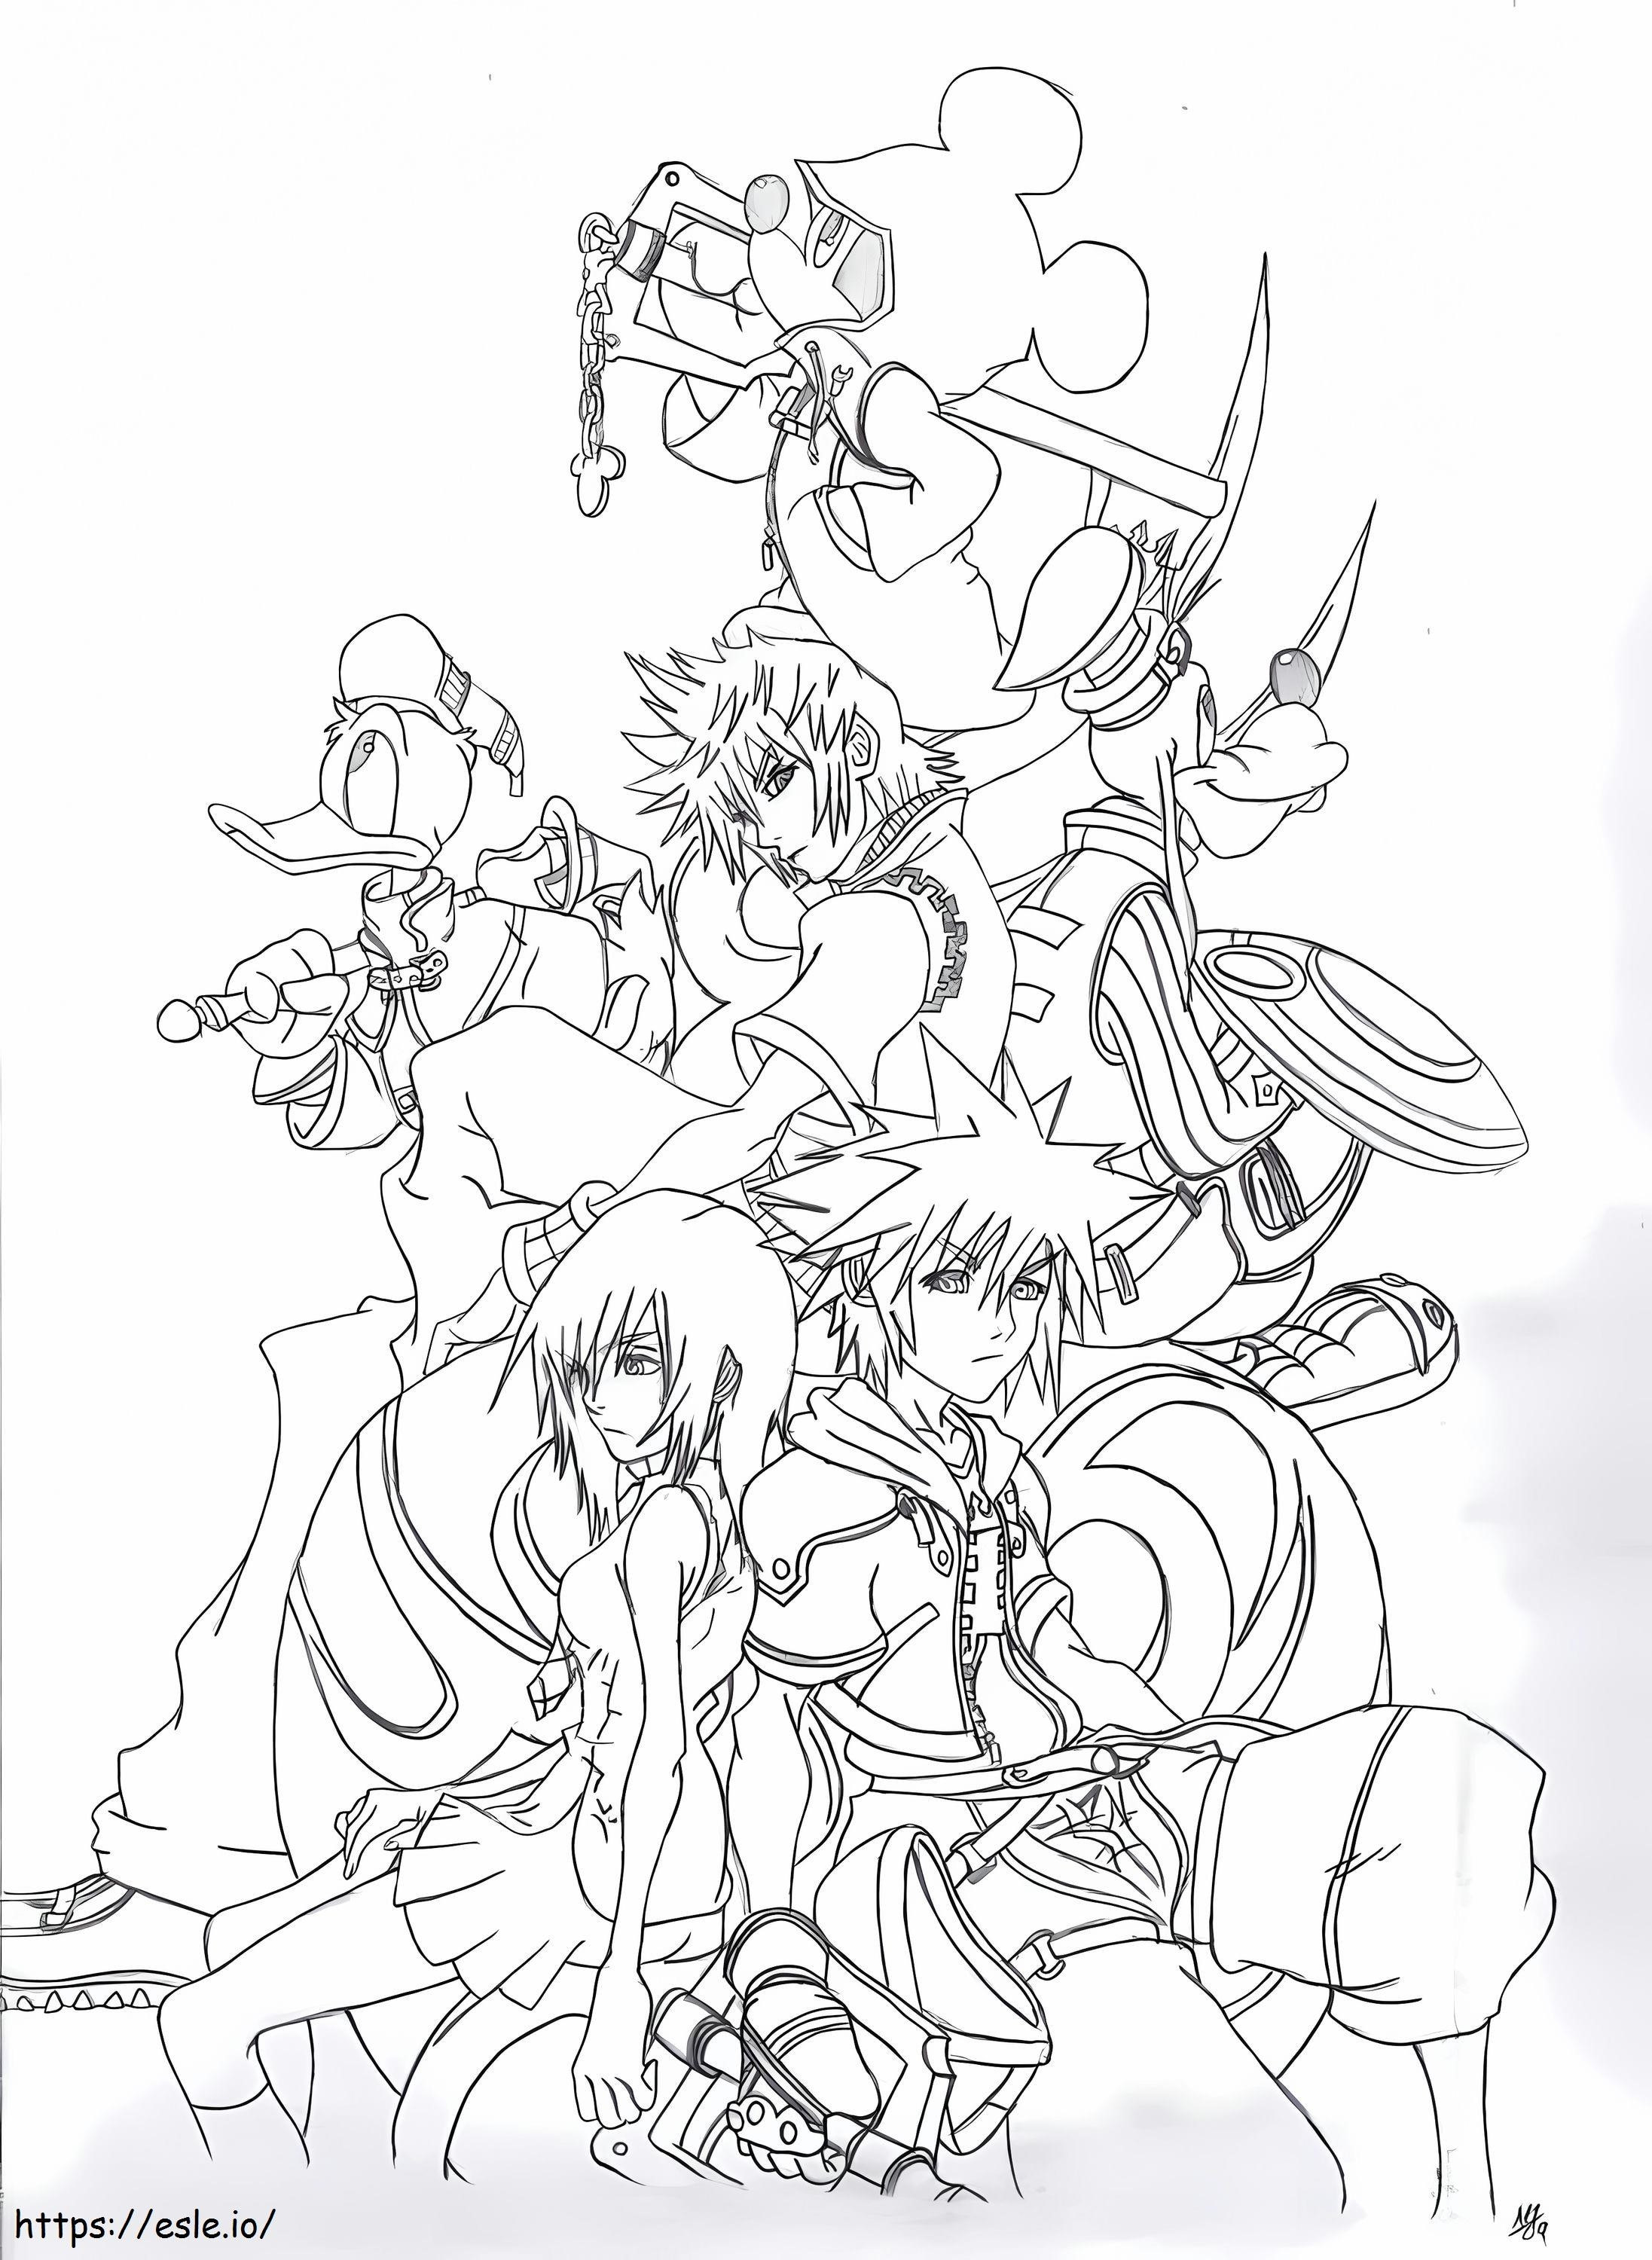 Jogo Kingdom Hearts para colorir